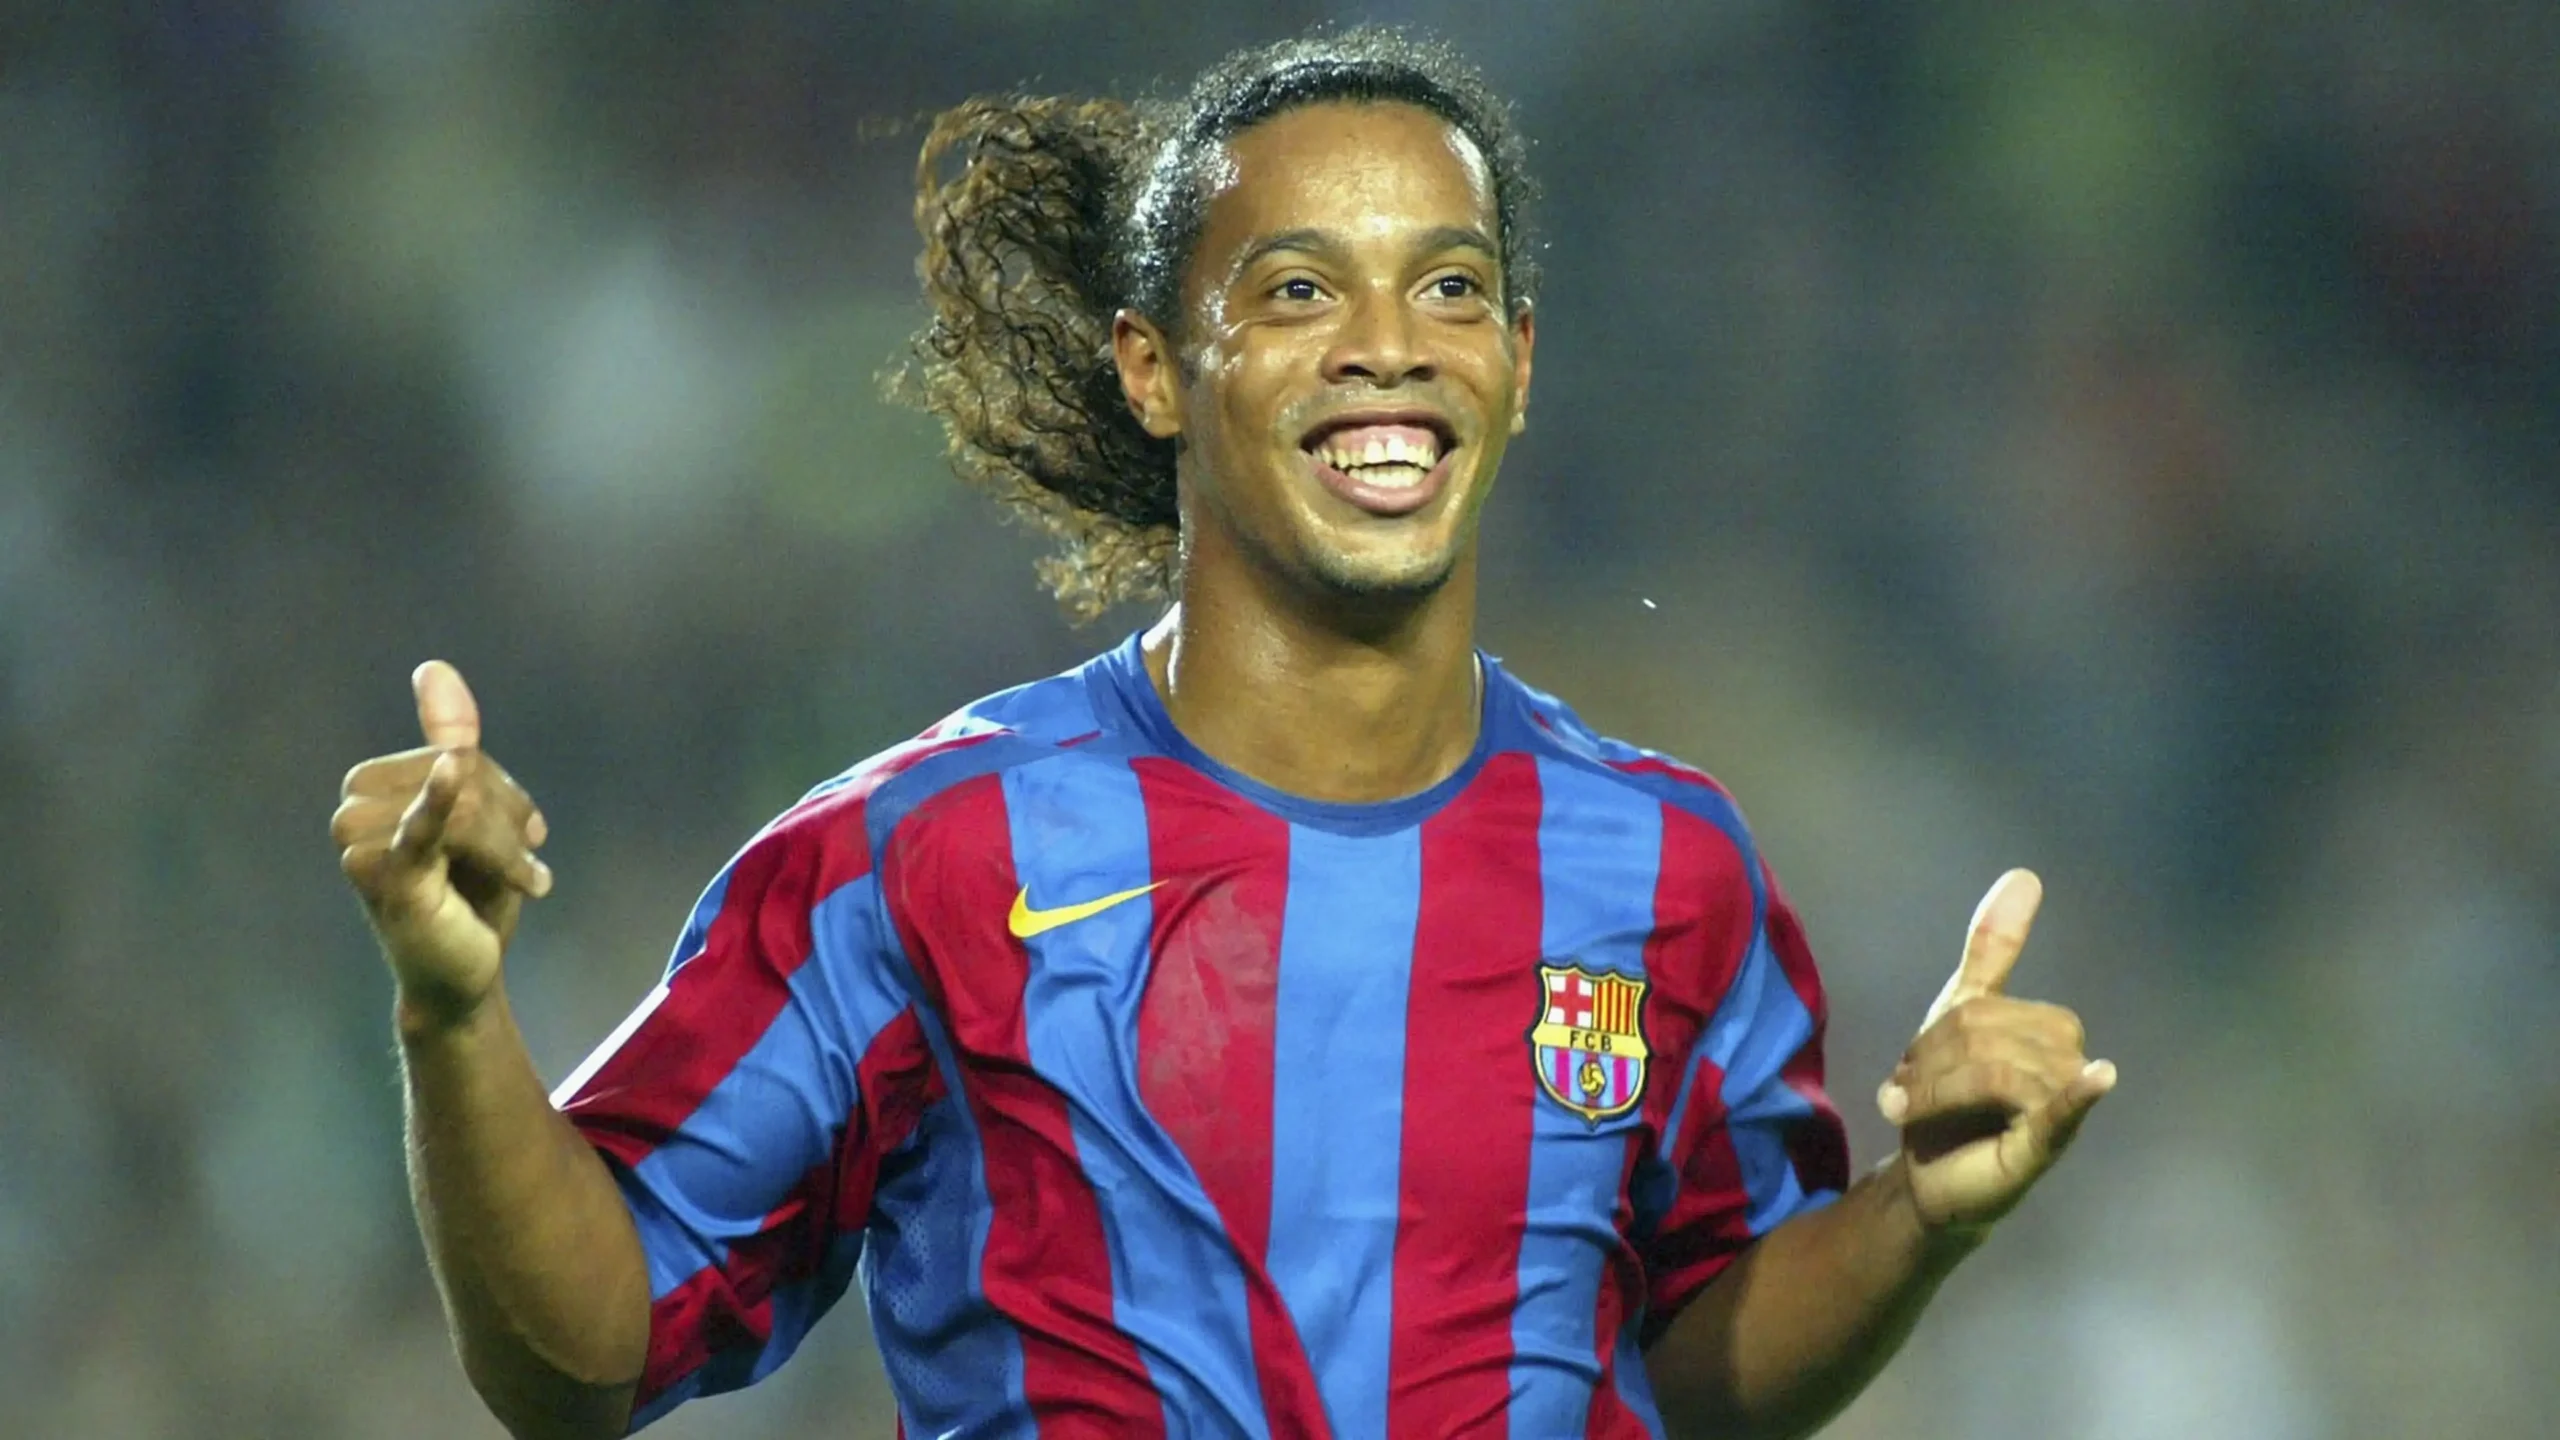 Lances incríveis do Ronaldinho Gaúcho #futebol #futebolbrasileiro